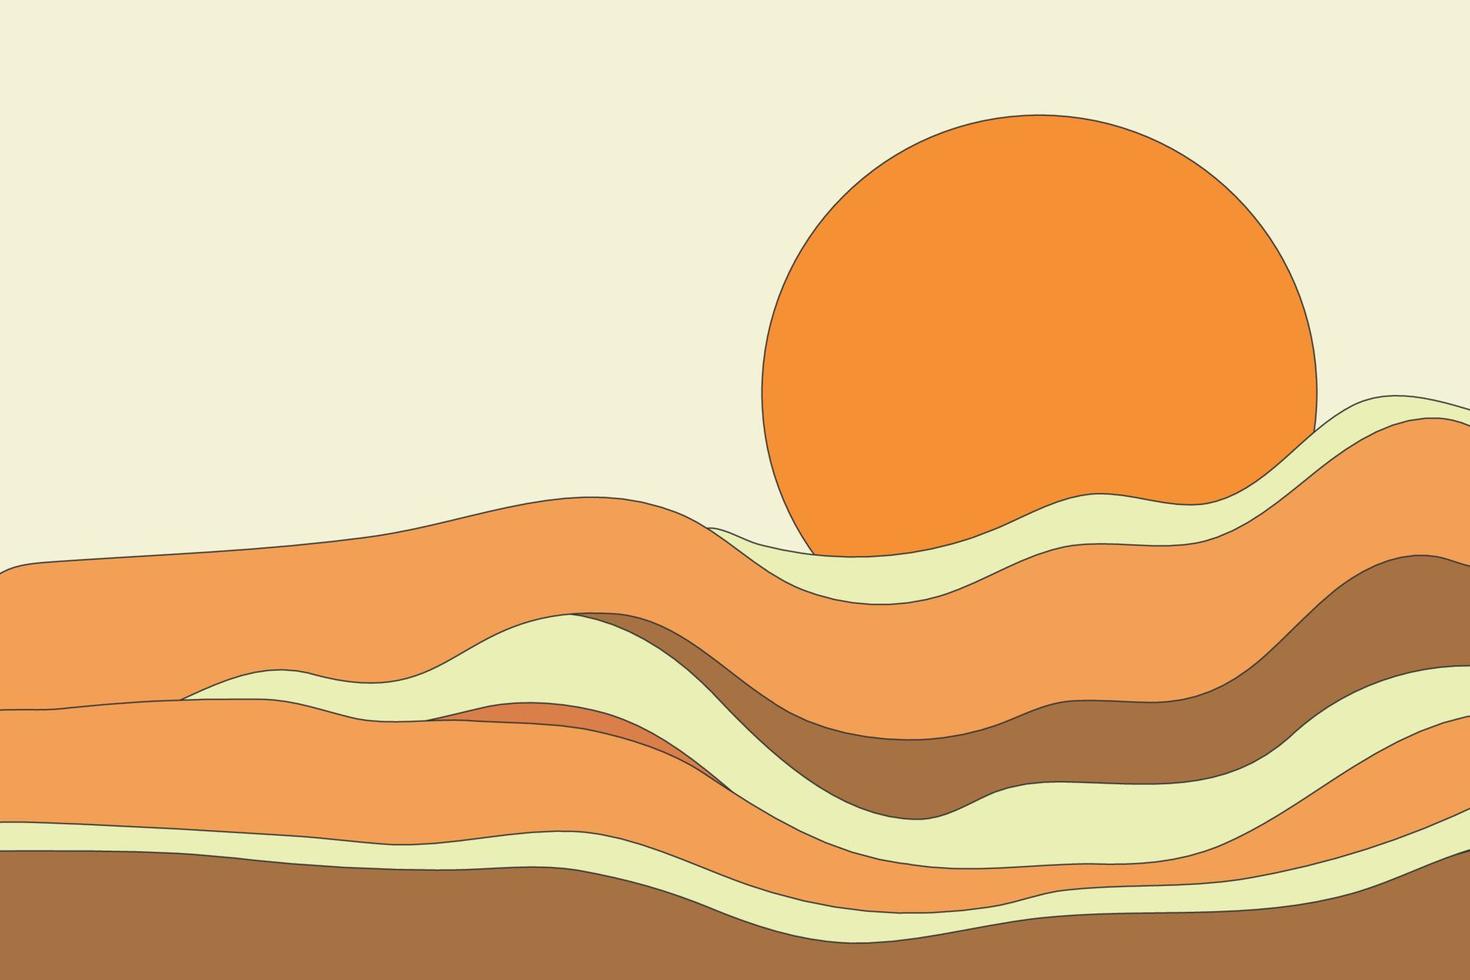 landschaft mit bunten bergen und runder sonnenform 2d-illustration. helle bewegungslinienkunsttextur vektor